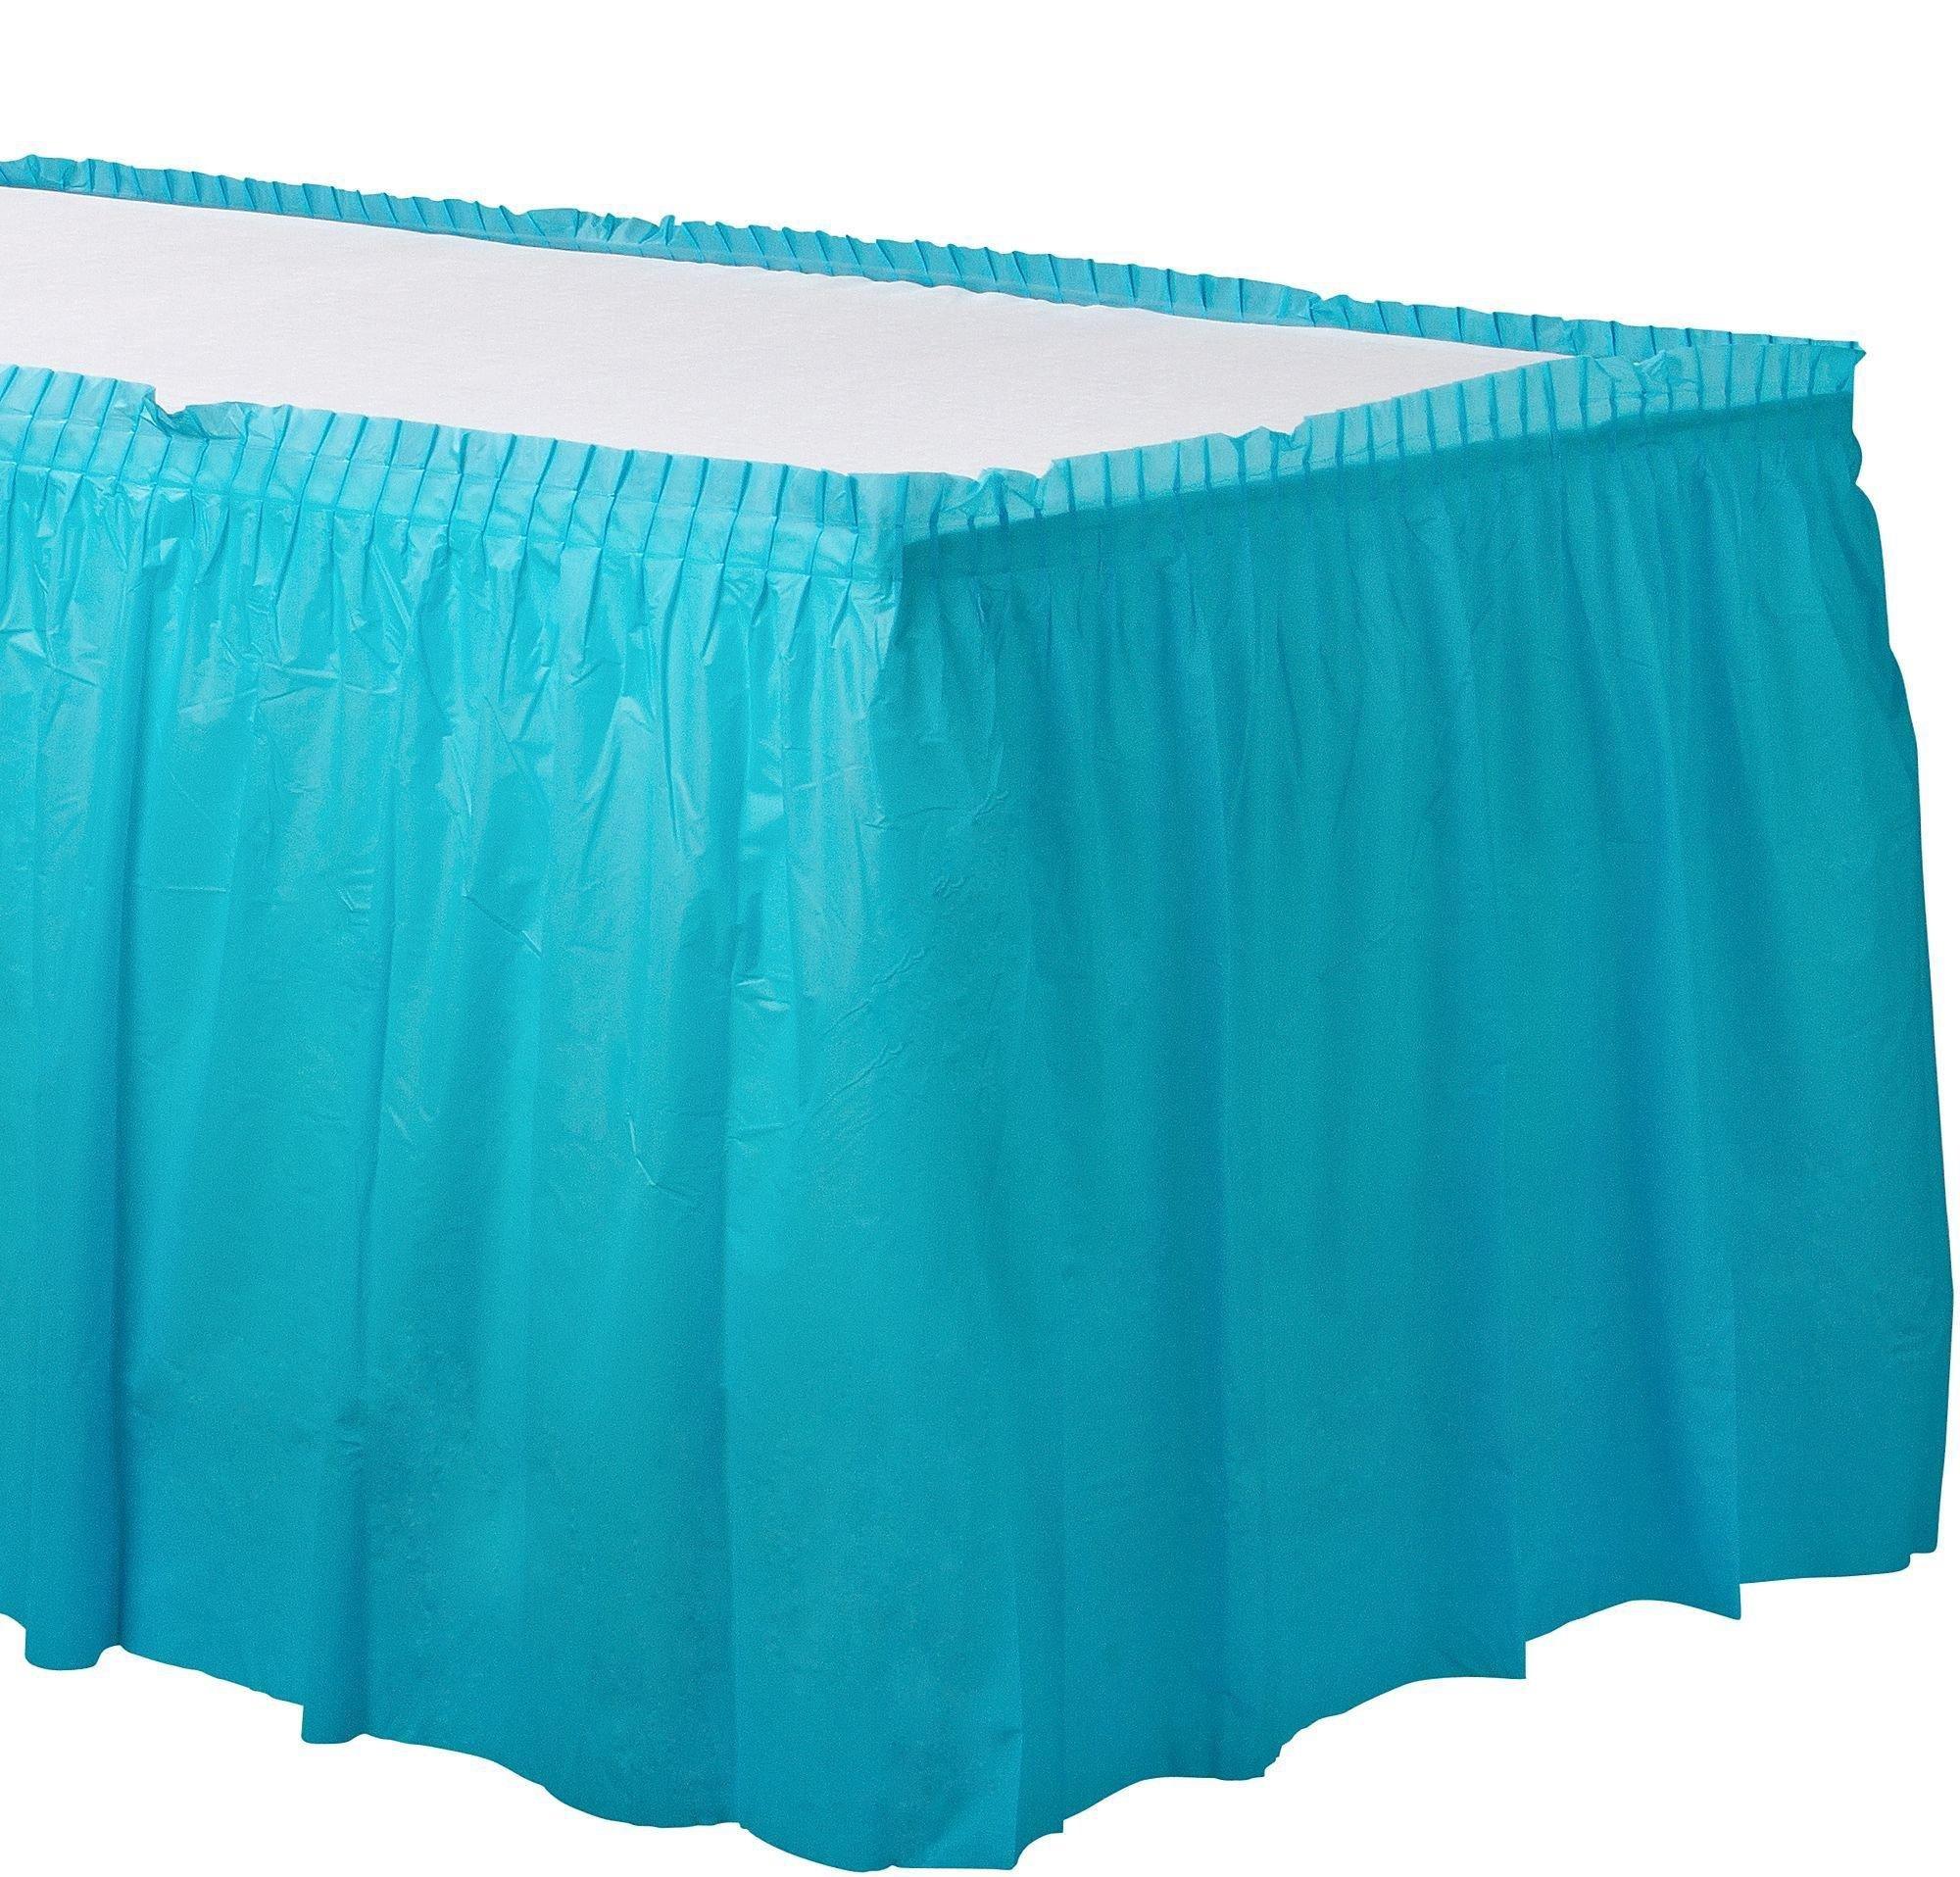 Caribbean Blue Plastic Table Skirt, 21ft x 29in